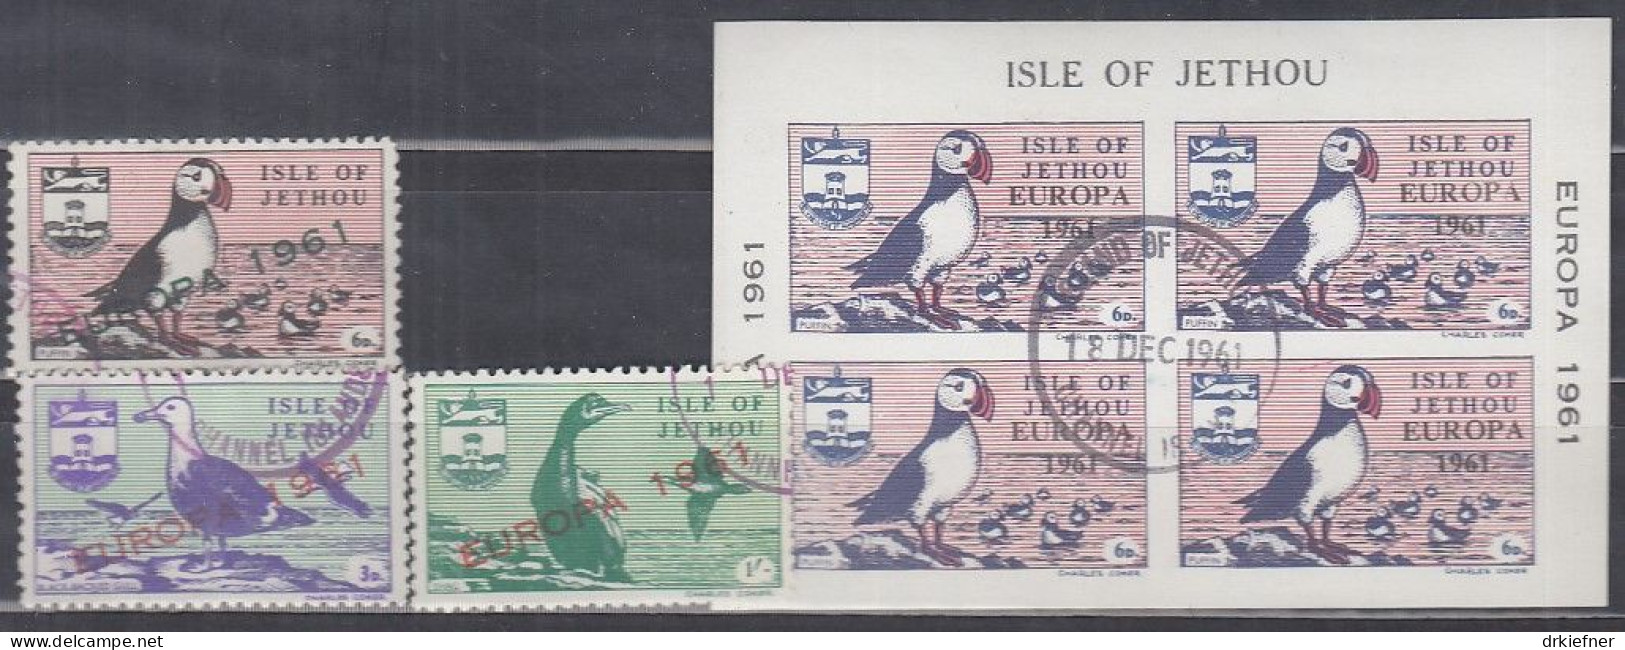 INSEL JETHOU (Guernsey), Nichtamtl. Briefmarken, 1 Block + 3 Marken, Gestempelt, Europa 1961, Vögel - Guernsey